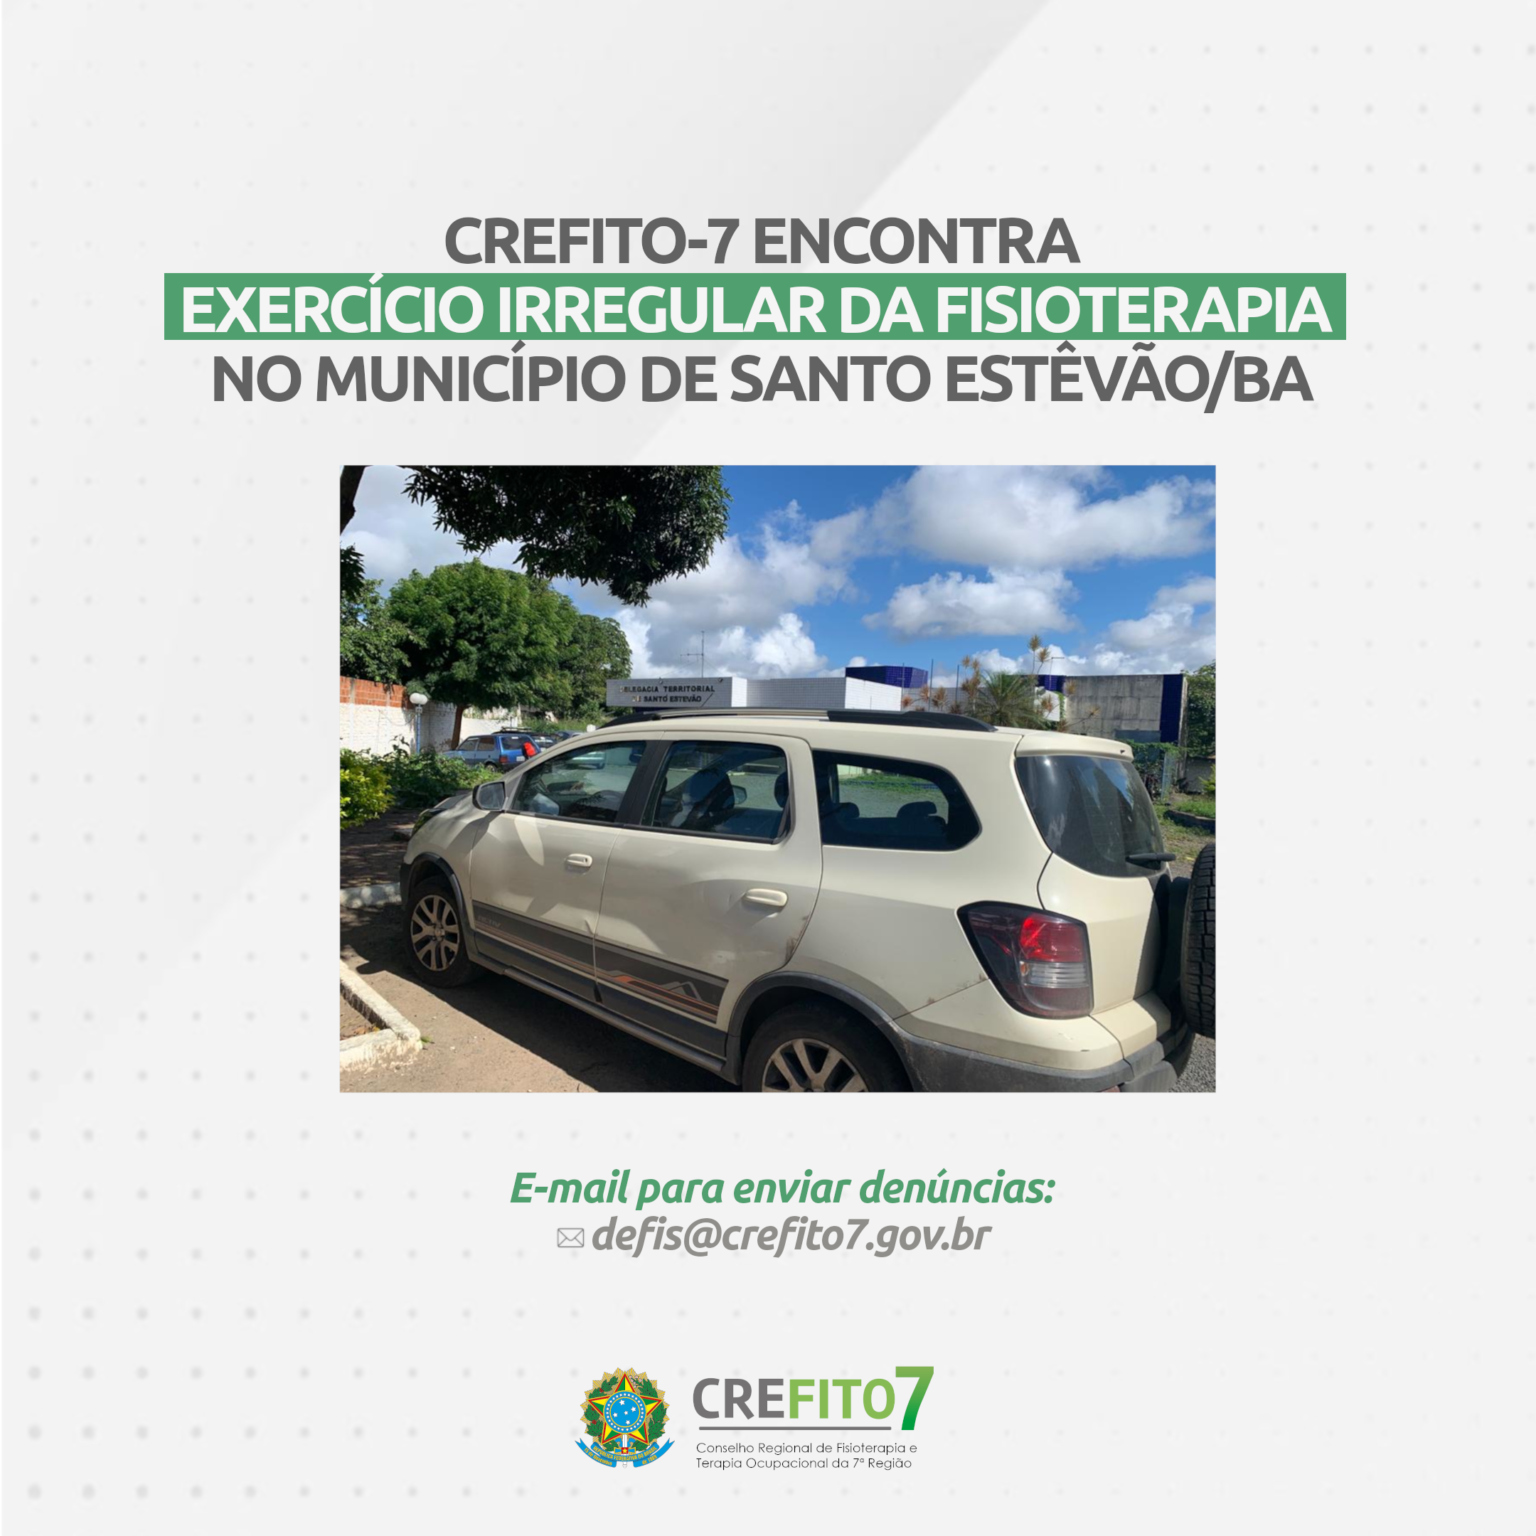 CREFITO-7 encontra exercício irregular da Fisioterapia no município de Santo Estêvão/BA